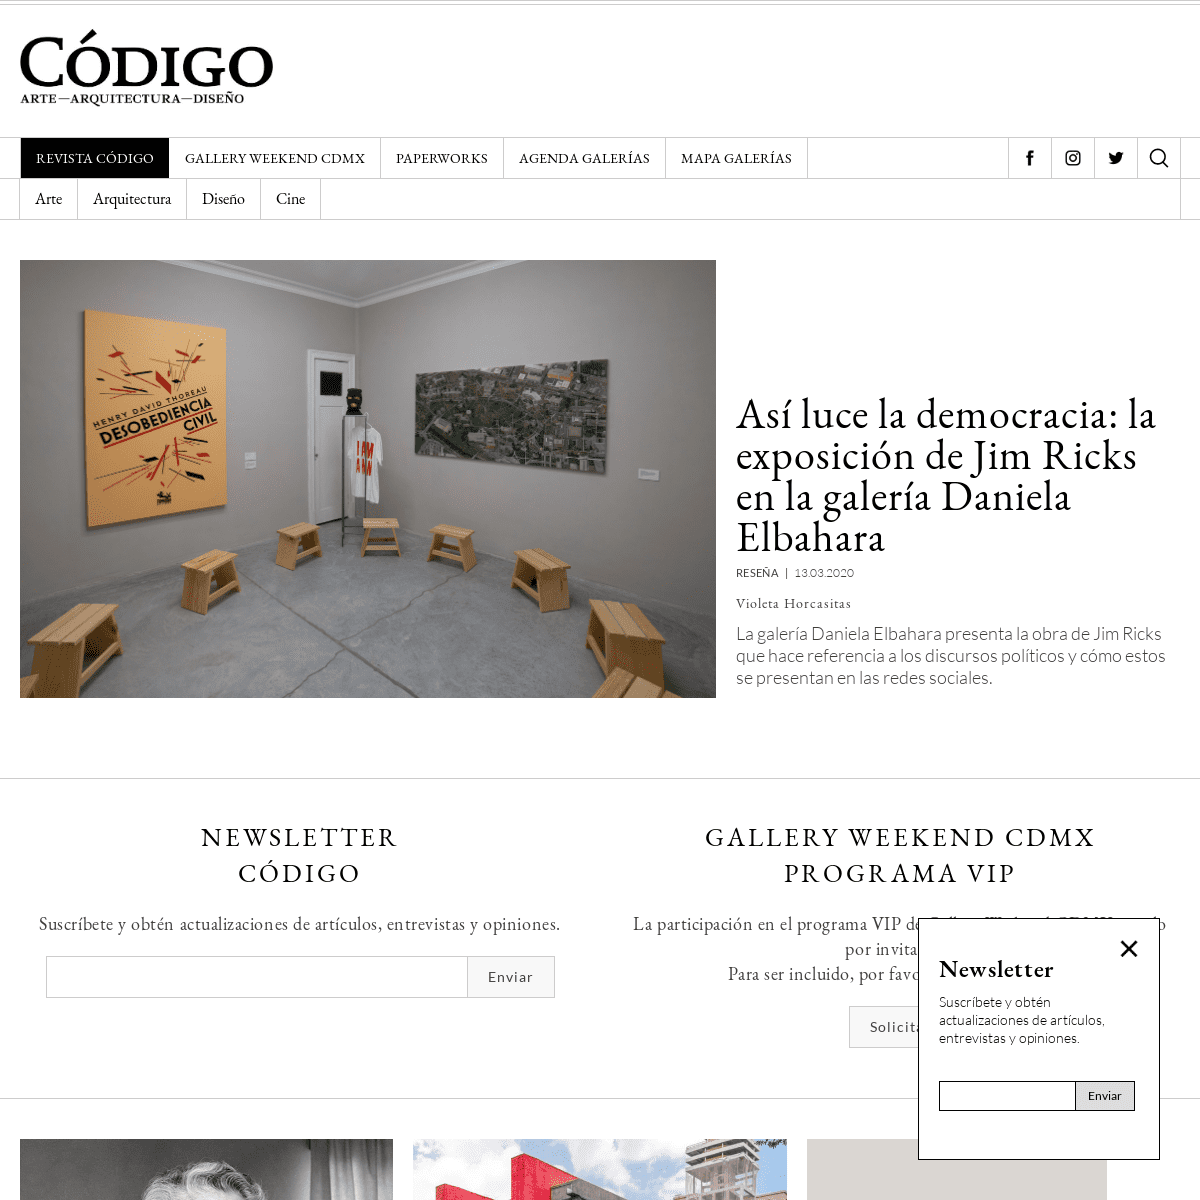 A complete backup of revistacodigo.com